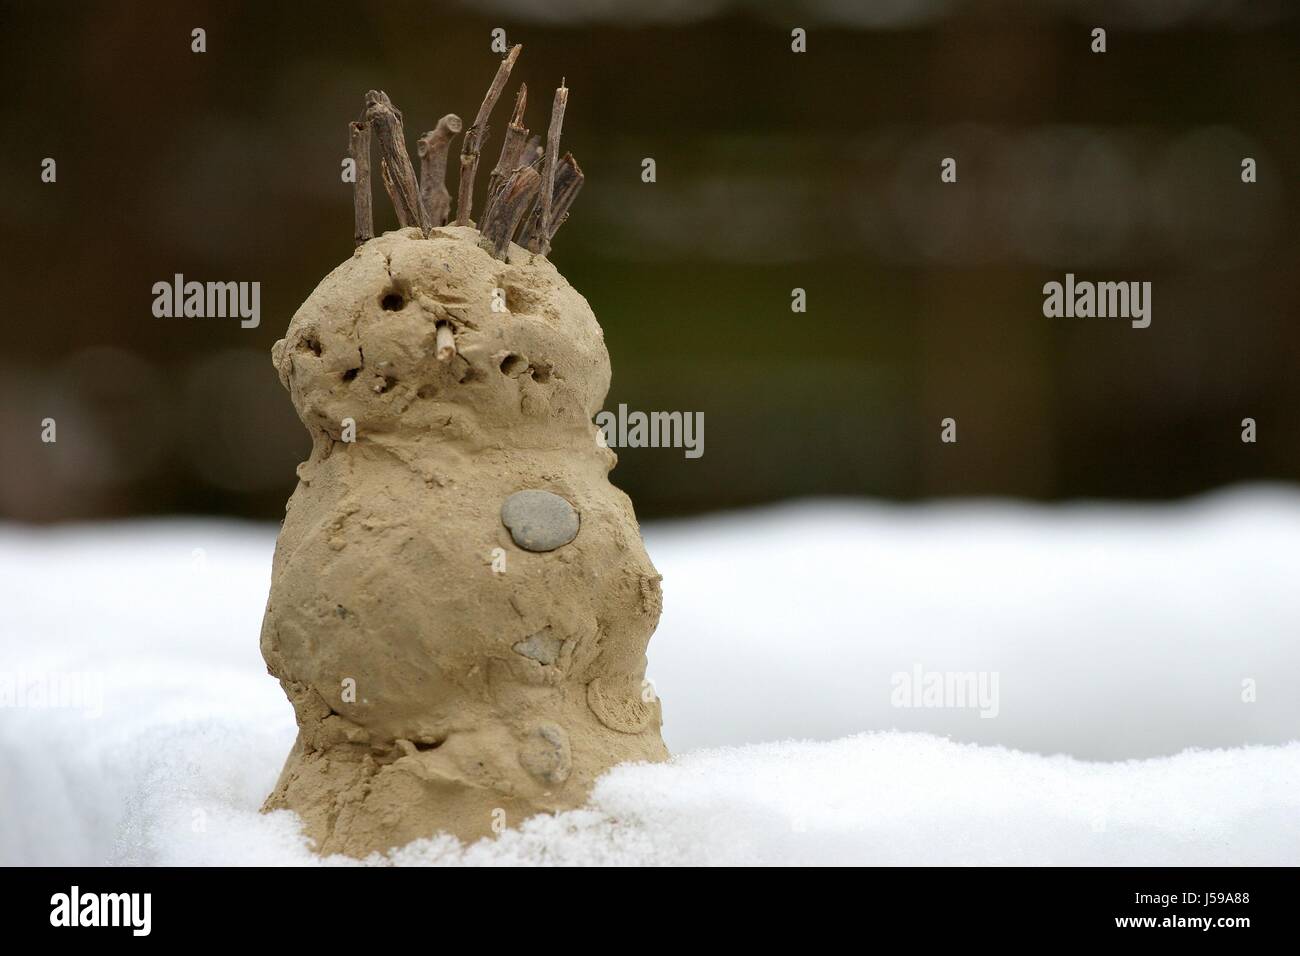 Drôle de bonhomme hiver art clay caricature lehmmann lehmgebilde winterbild la neige Banque D'Images